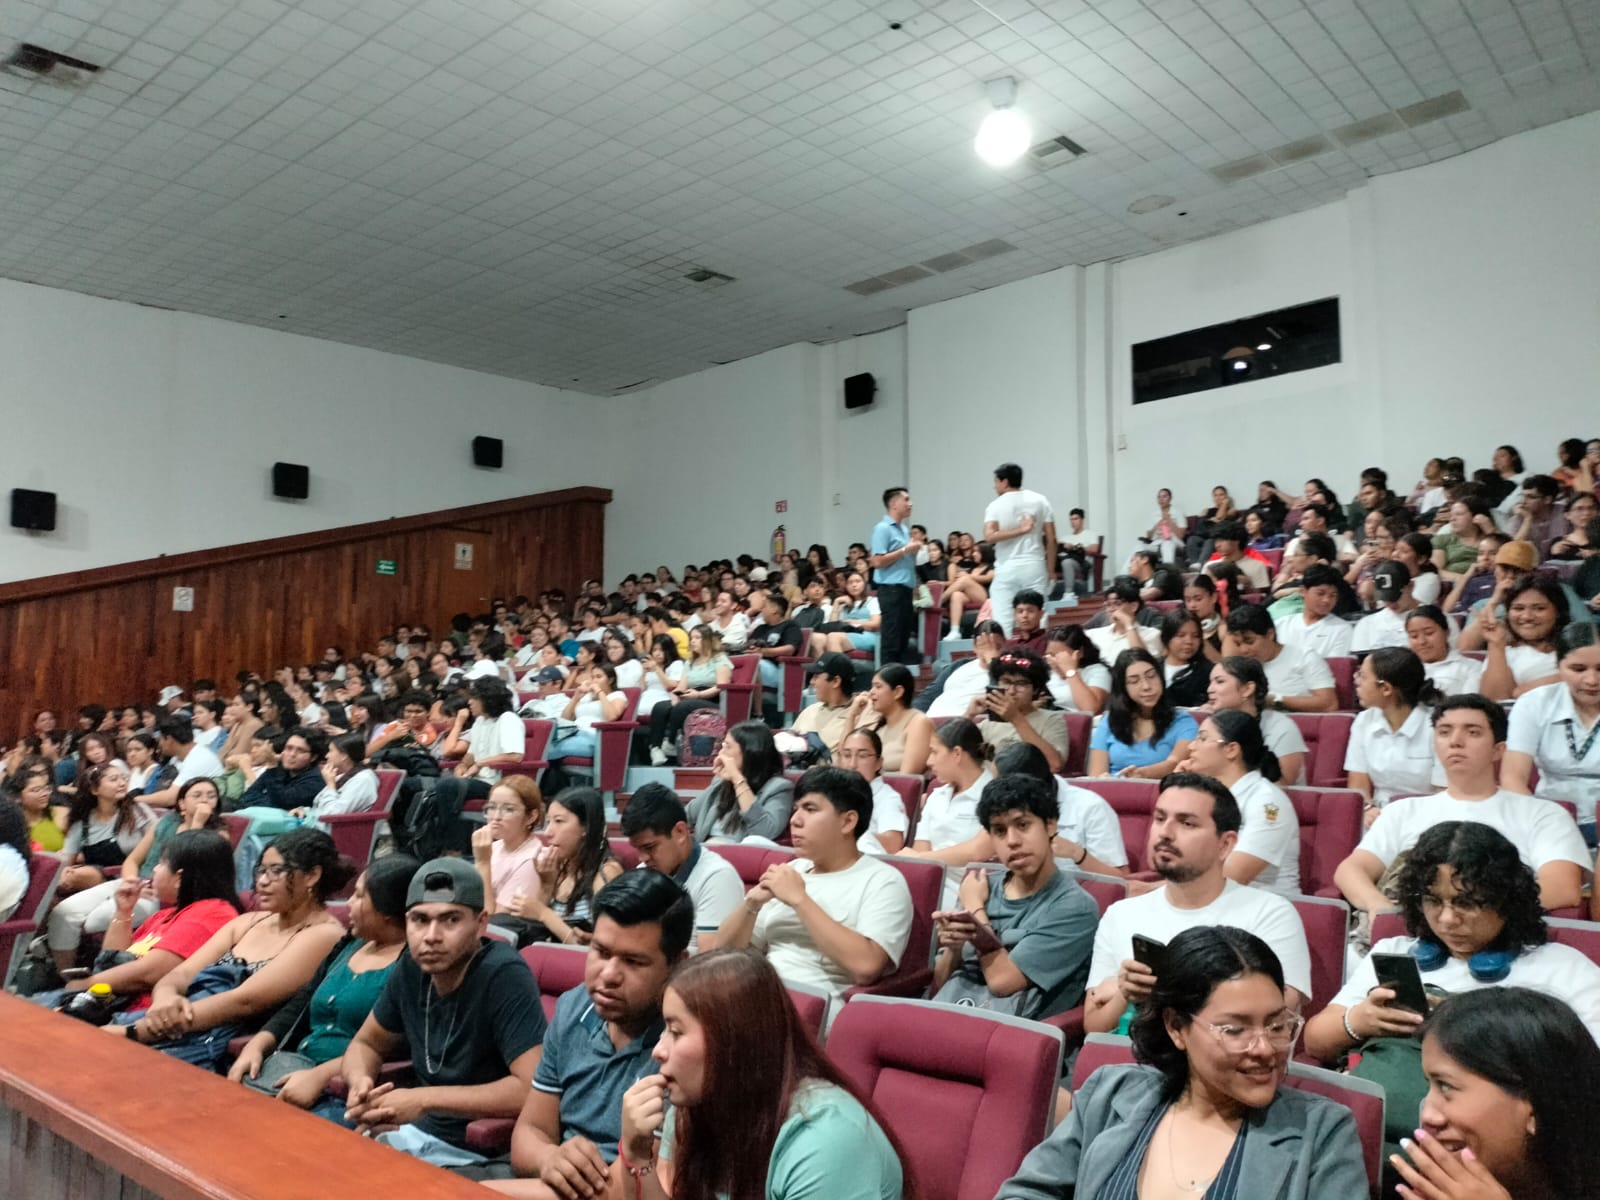 Máynez, candidato presidencial de MC, dialoga con estudiantes del CUCosta en Vallarta